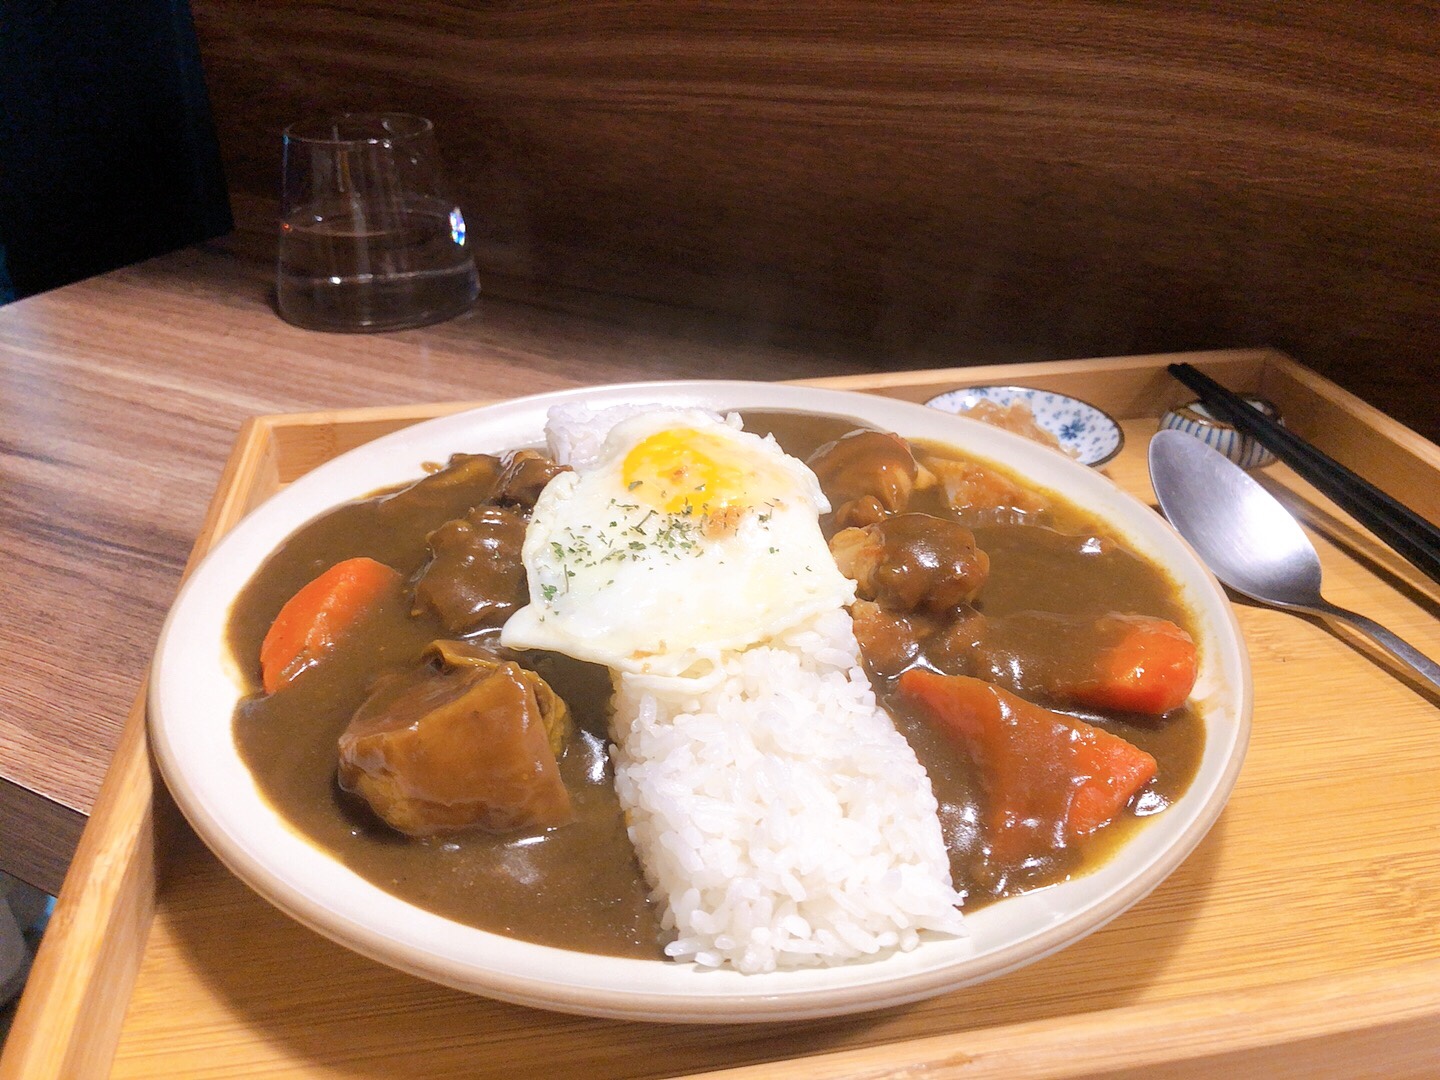  台北咖哩 富士咖哩fuji curry-雙拼咖哩